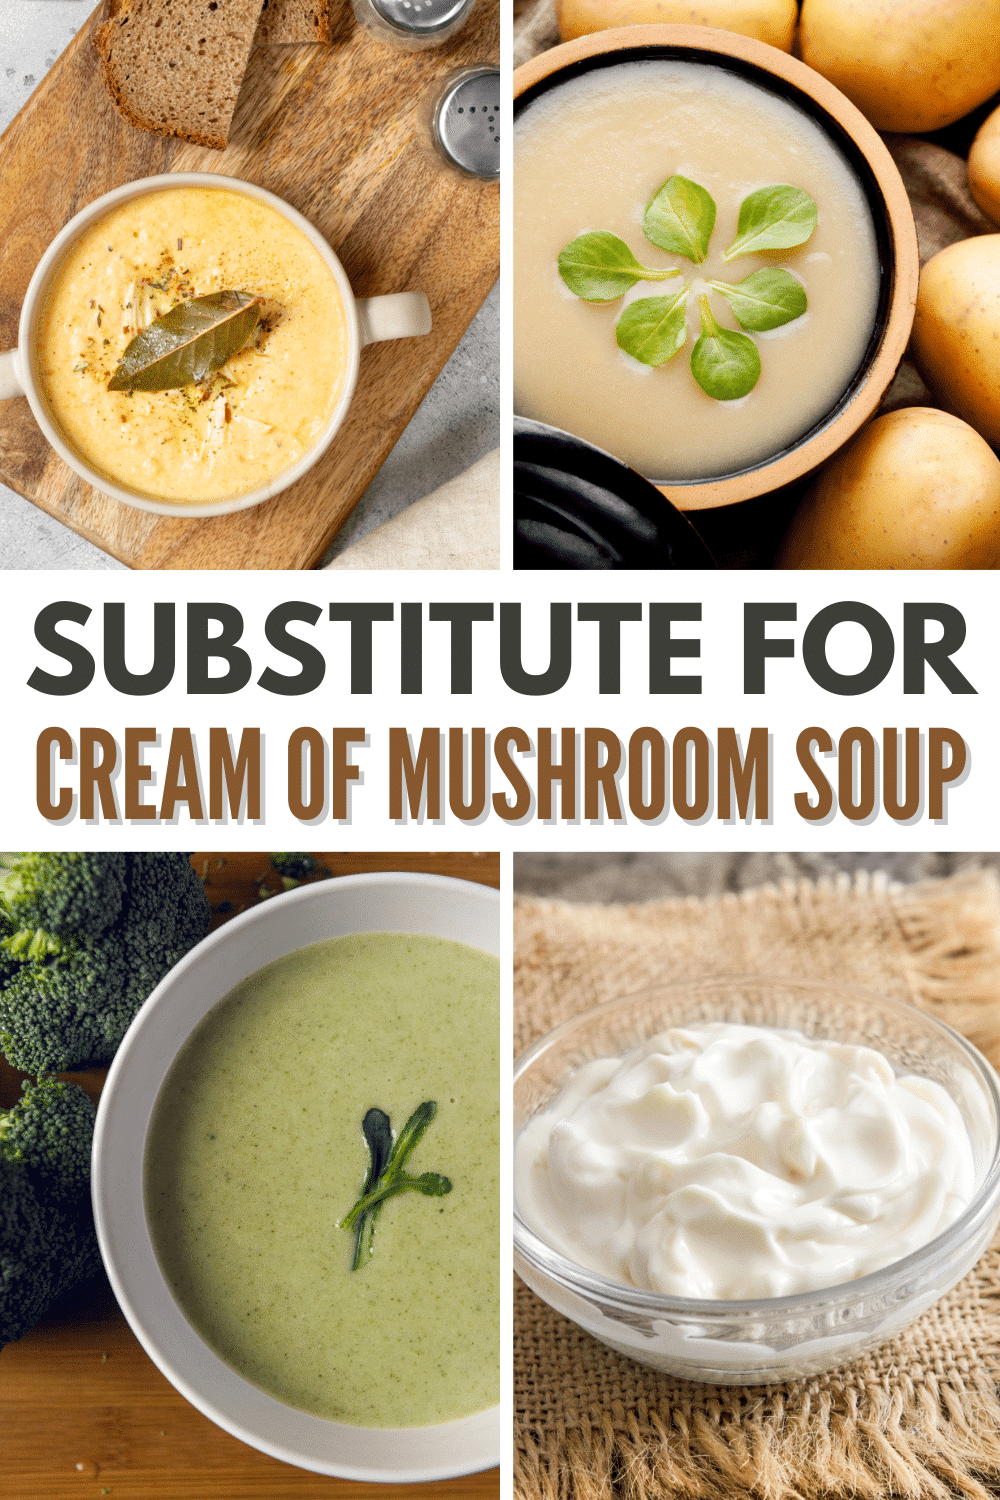 Substitute for cream of mushroom soup.